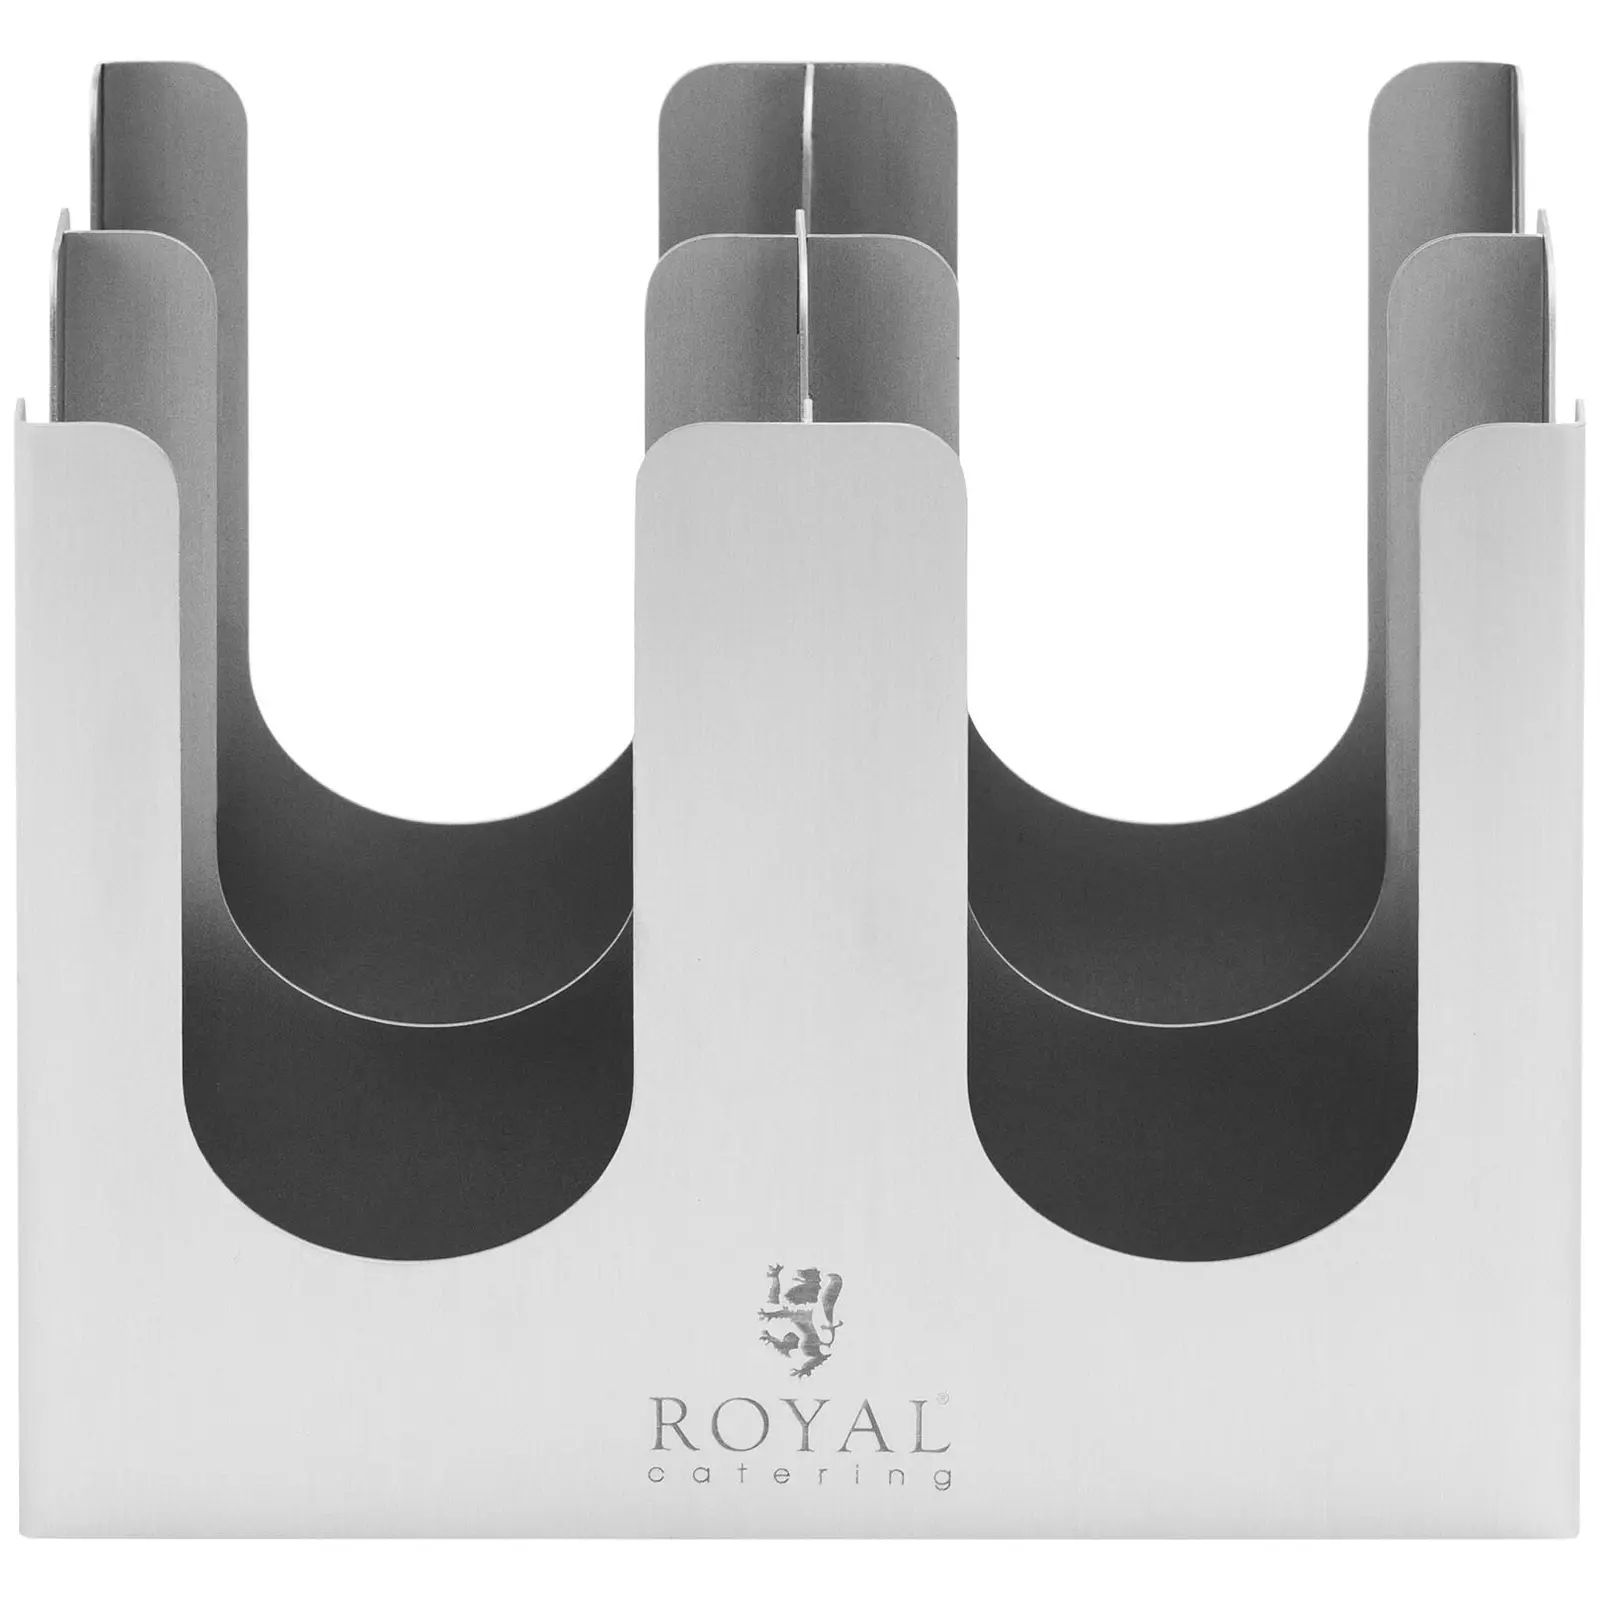 Présentoir pour gobelets et couvercles - 4 compartiments - Acier inoxydable - Royal Catering